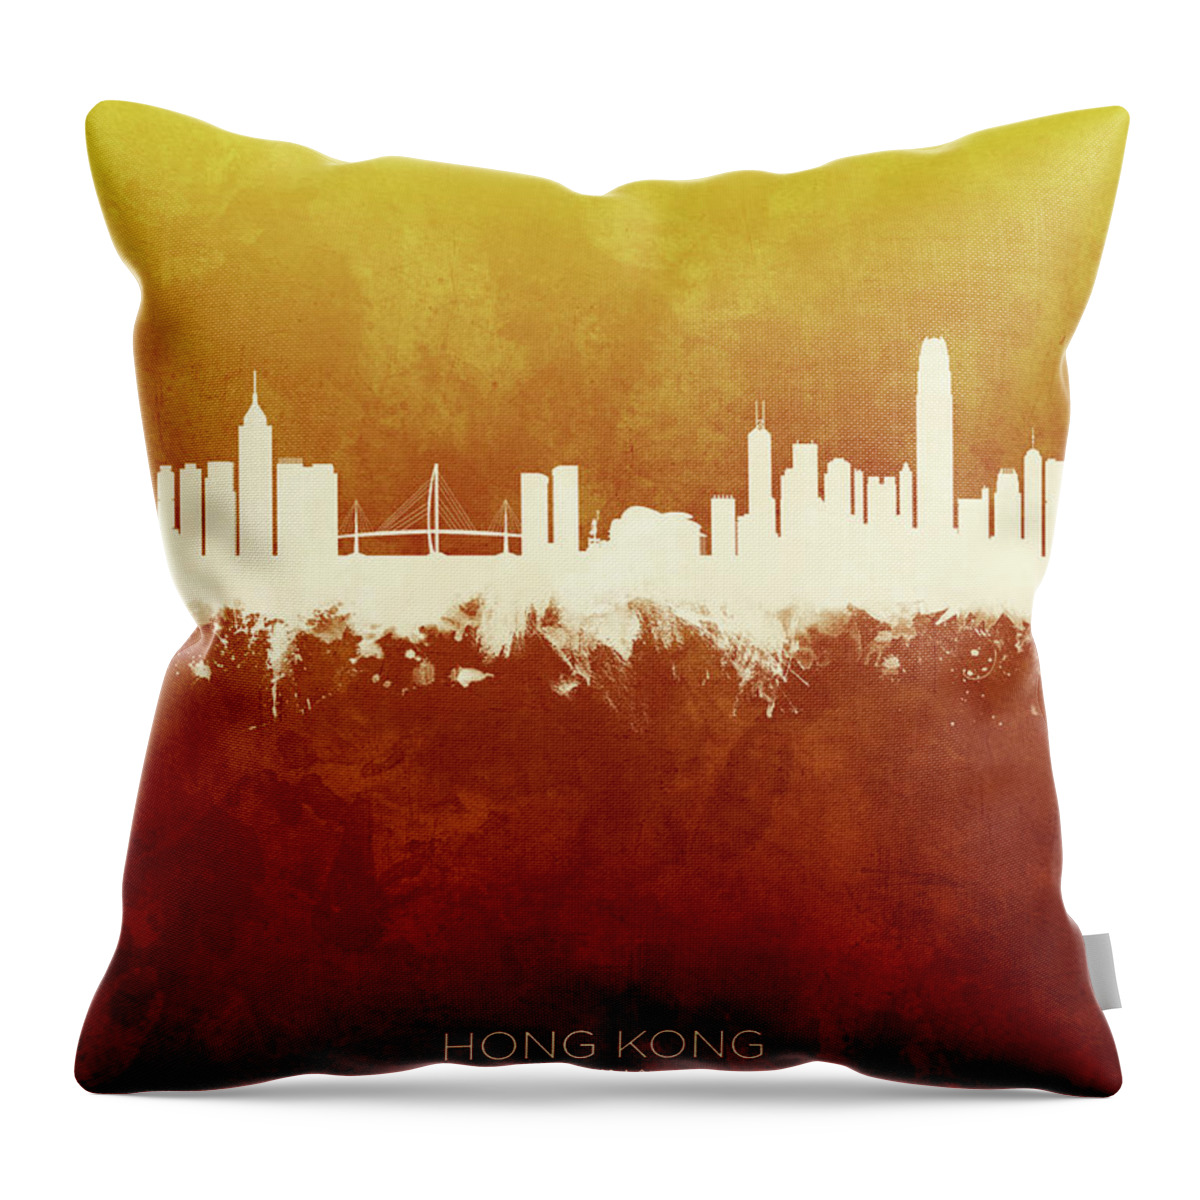 Hong Kong Throw Pillow featuring the digital art Hong Kong China Skyline #3 by Michael Tompsett